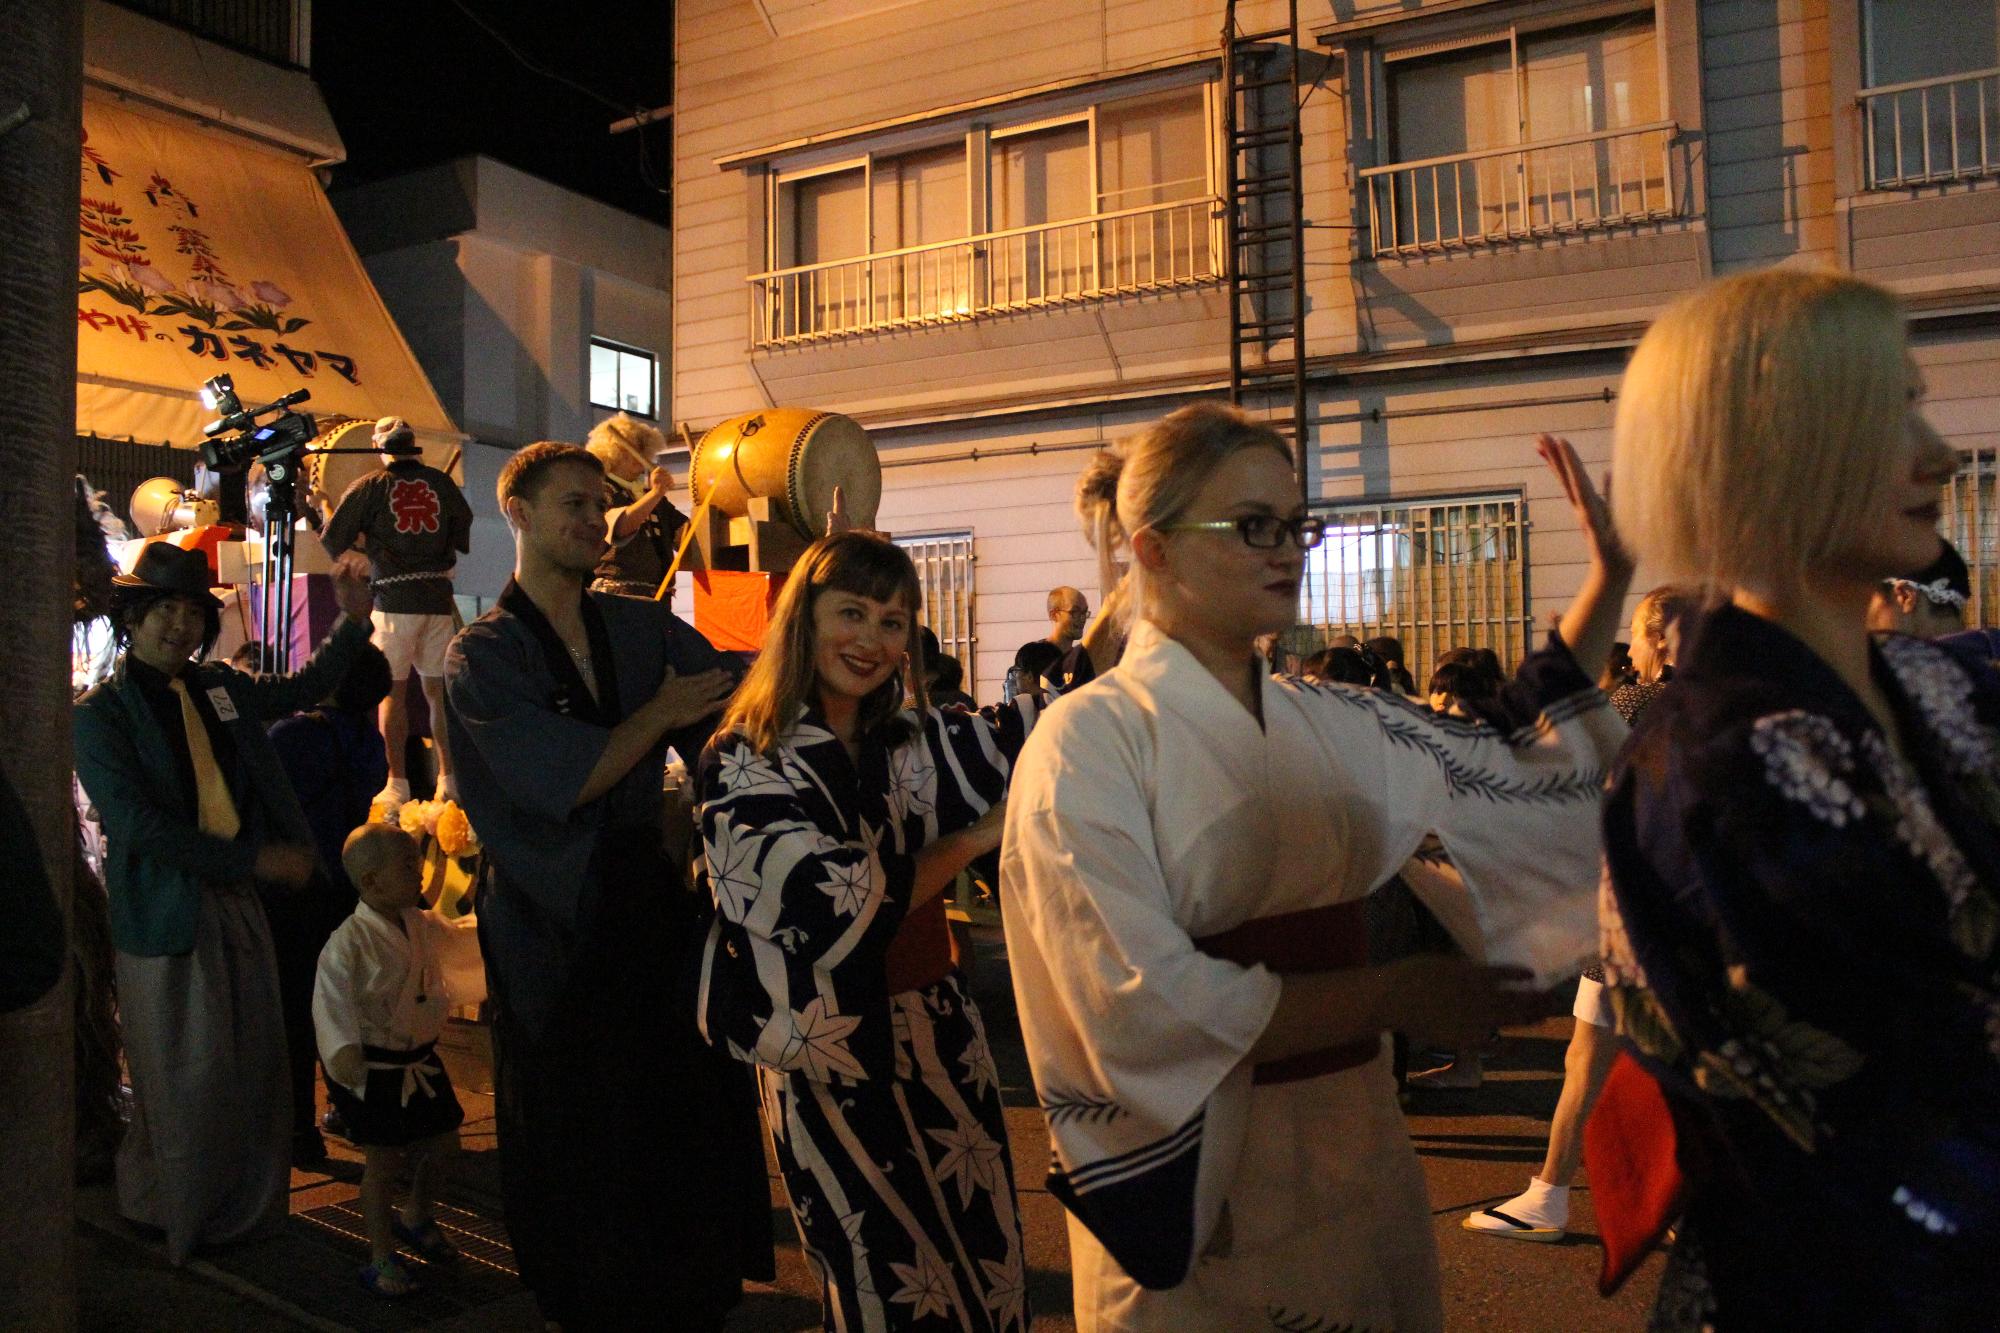 夜の温泉街に和太鼓がおかれ輪になって仮装した姿で盆踊りを踊る人々の写真